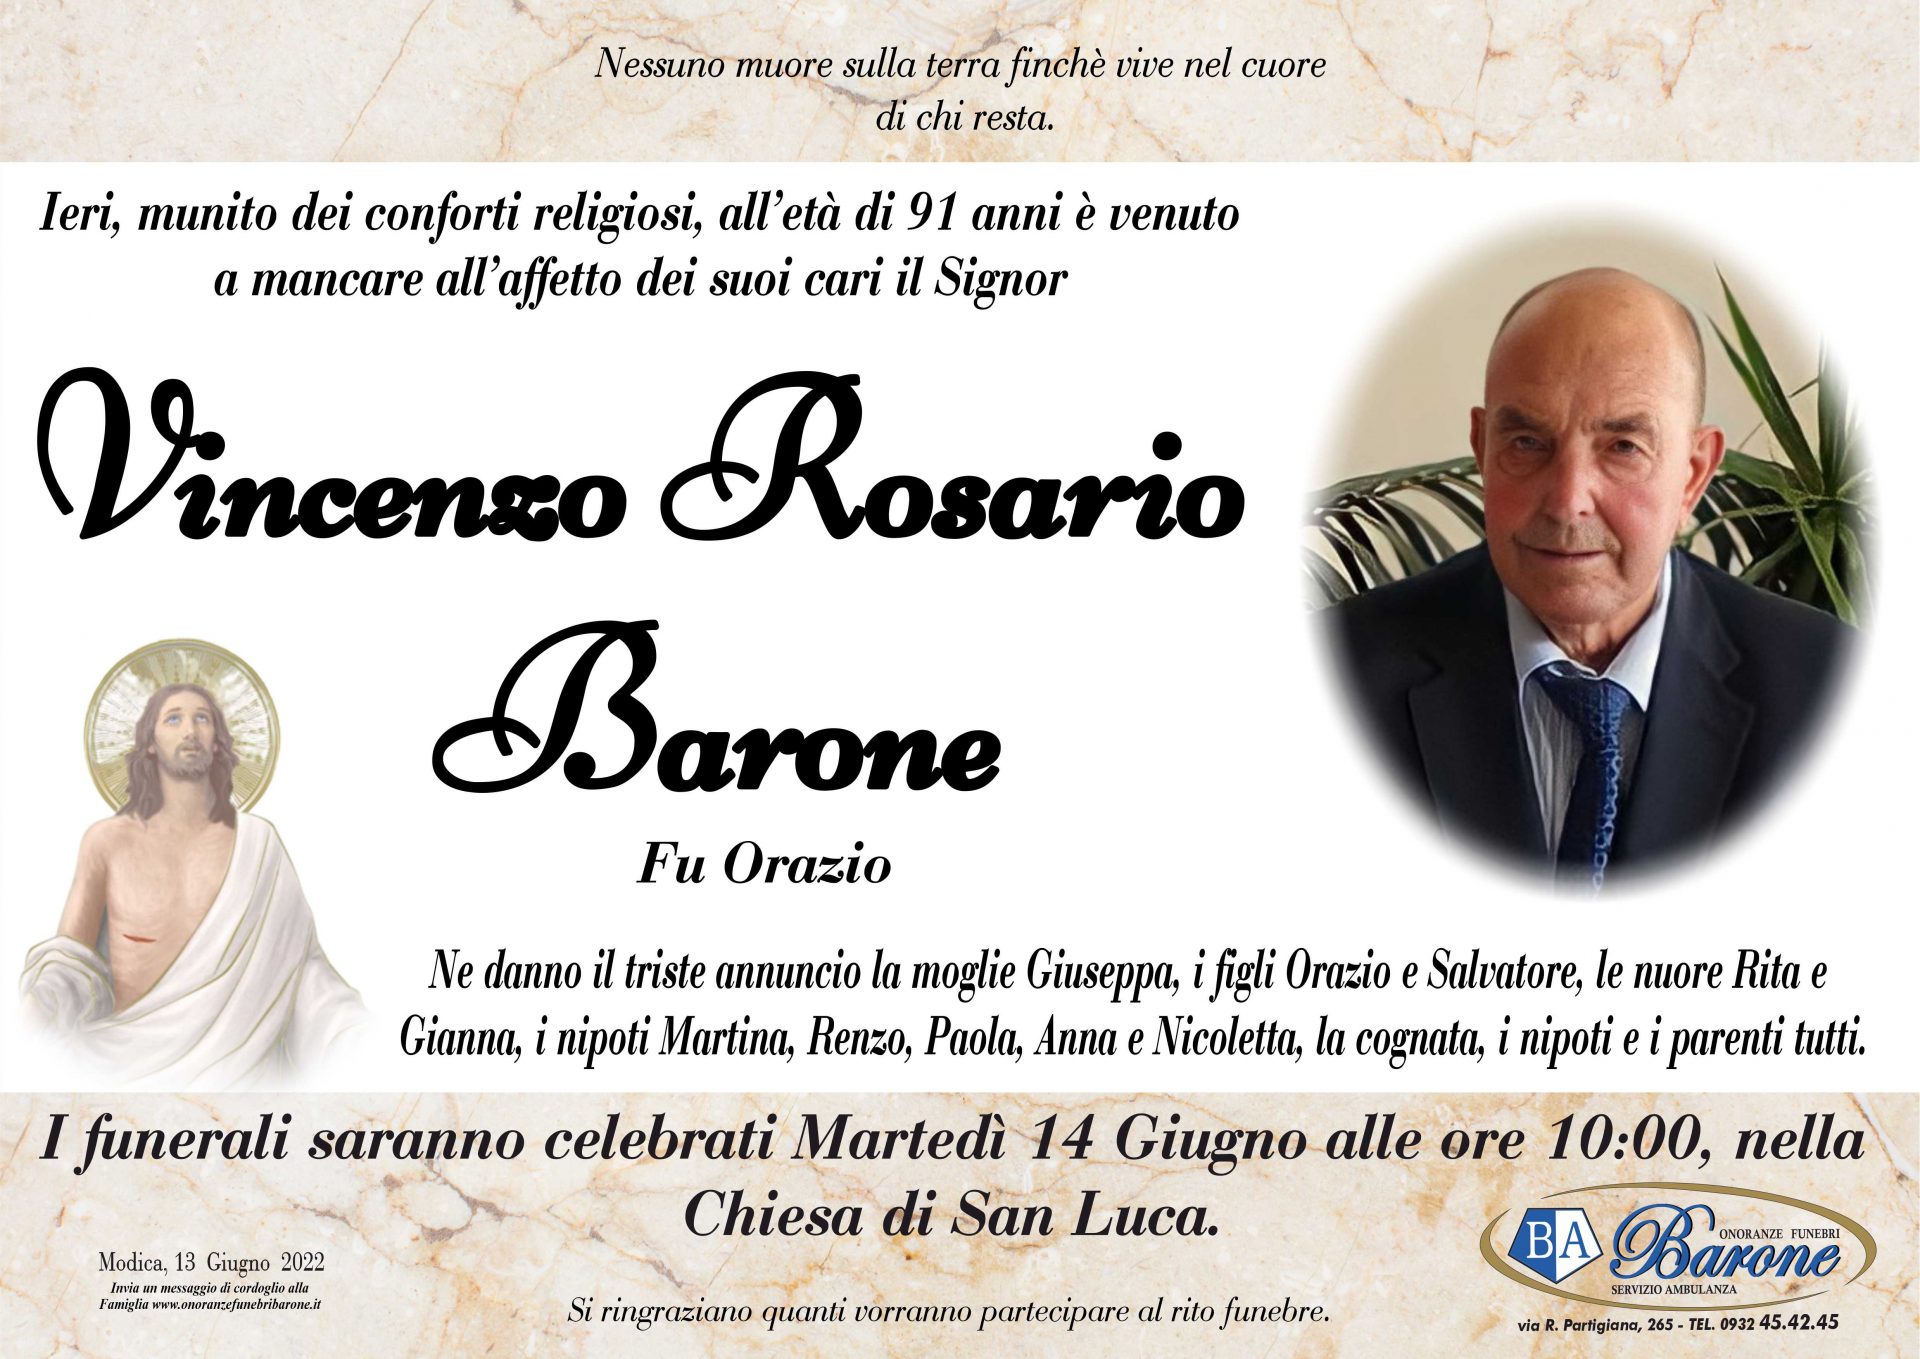 Vincenzo Rosario Barone